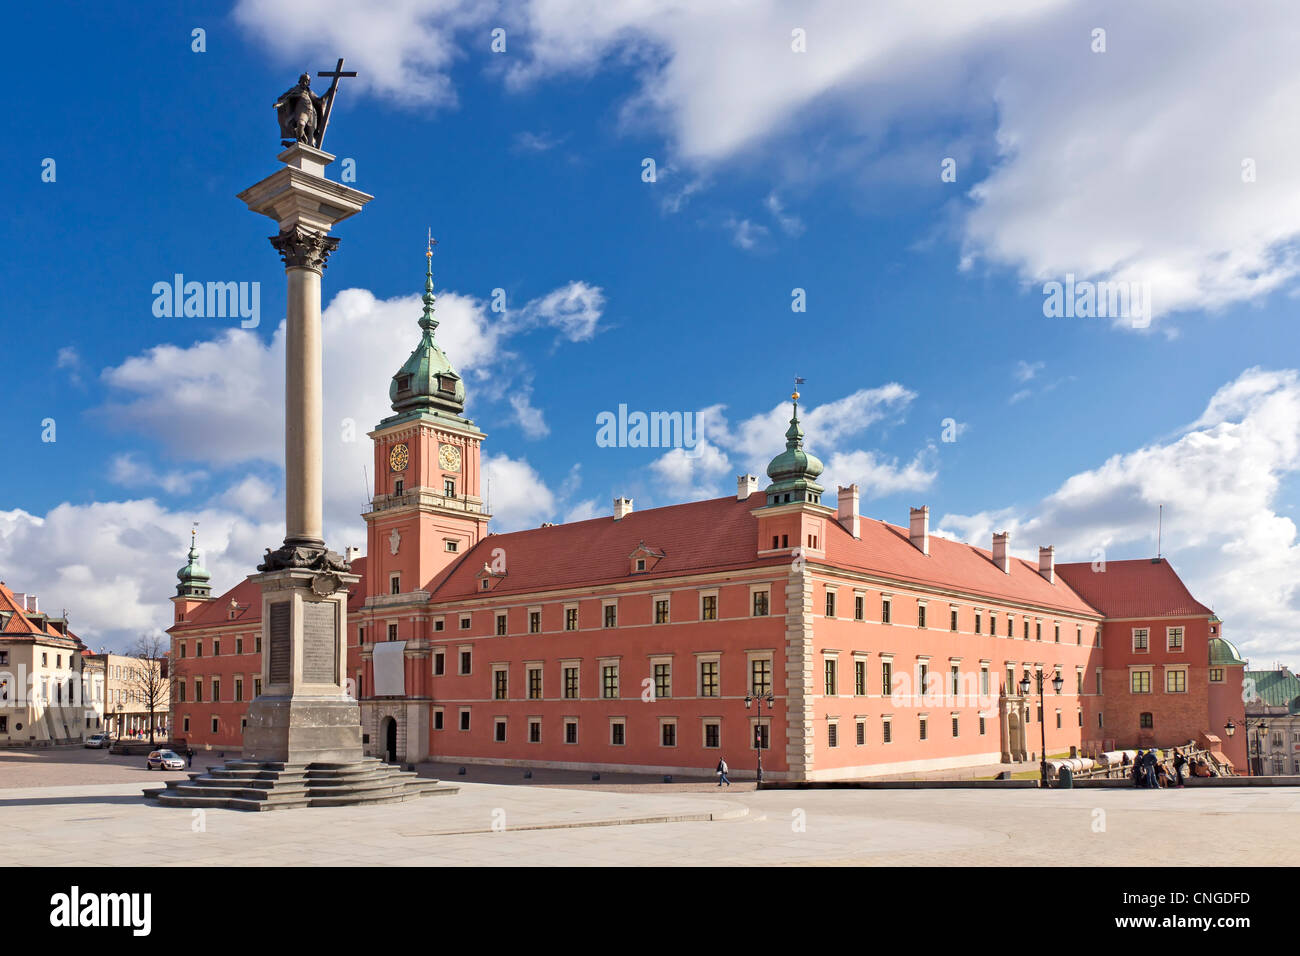 Sehenswürdigkeiten von Polen. Warschau-Schlossplatz mit König Sigismund Spalte. Stockfoto